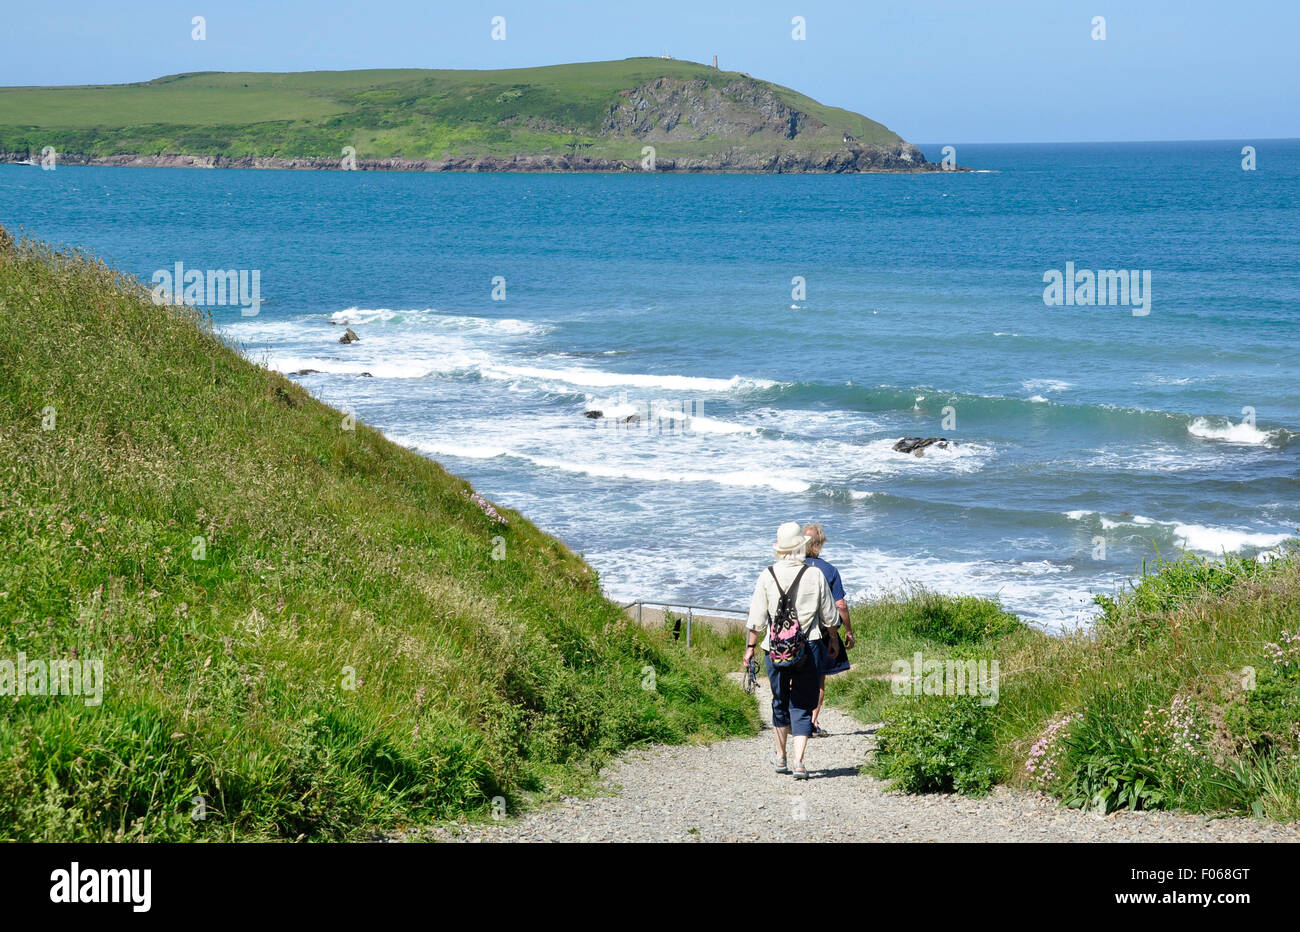 North Cornwall - Klippe Top - Strand Greenaway - paar zu Fuß weg - White crest Breakers - blaue Meer/Himmel Stockfoto